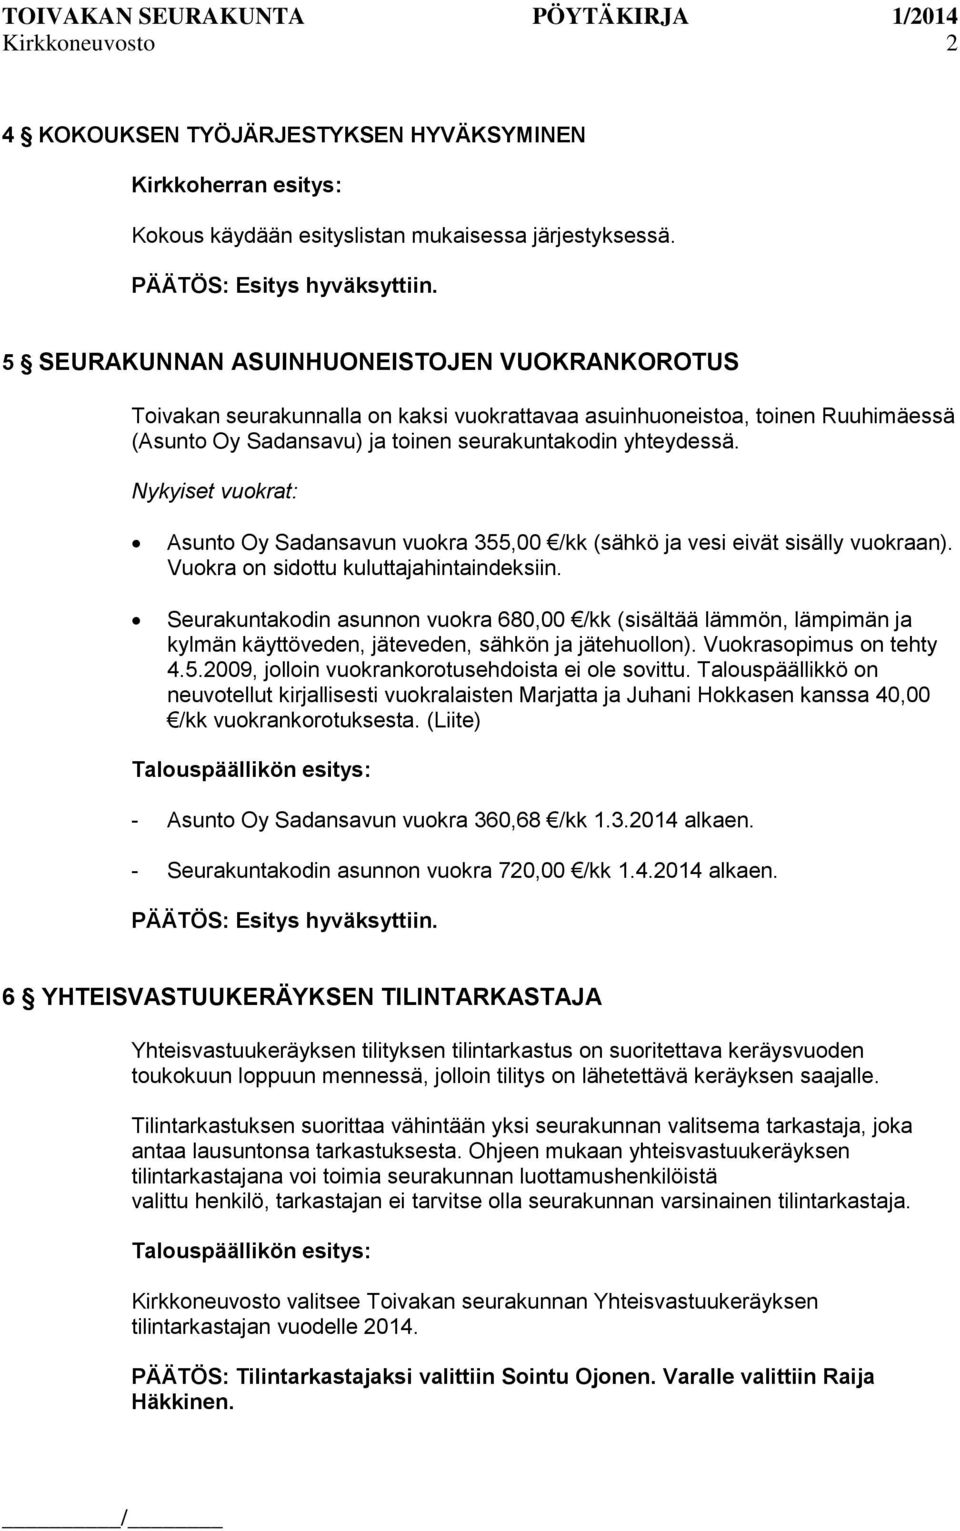 Nykyiset vuokrat: Asunto Oy Sadansavun vuokra 355,00 /kk (sähkö ja vesi eivät sisälly vuokraan). Vuokra on sidottu kuluttajahintaindeksiin.